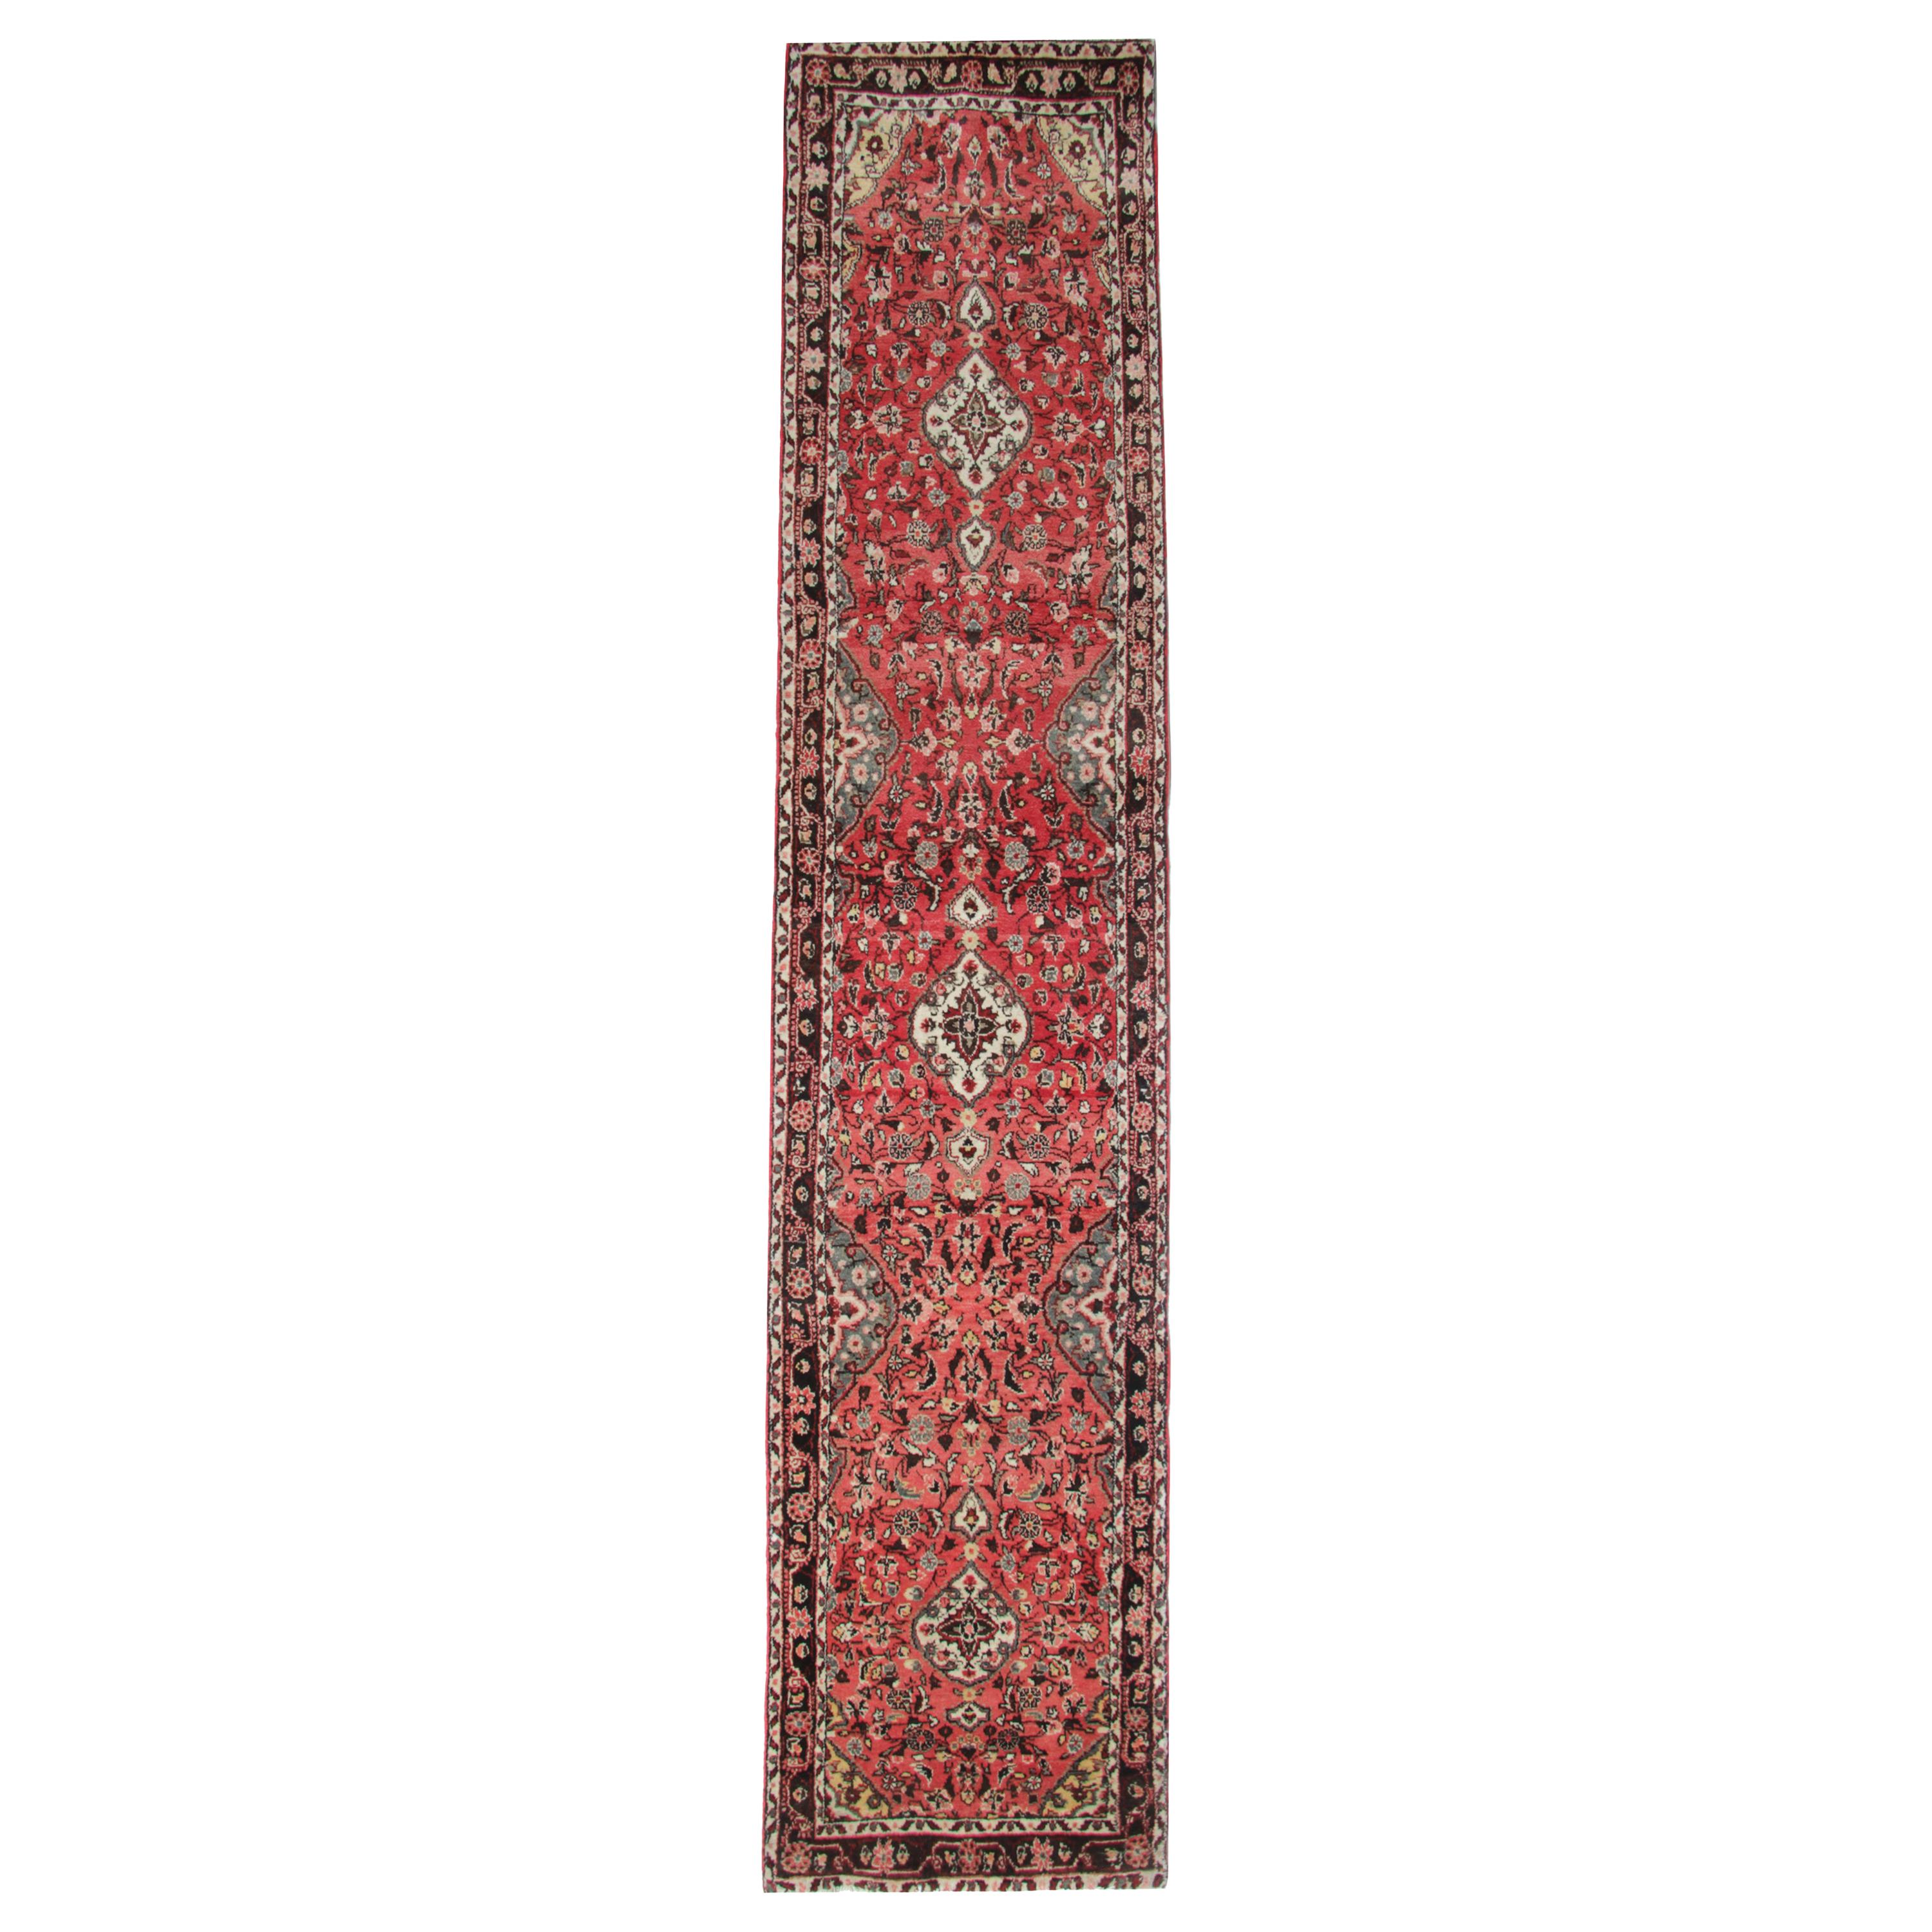 Vintage Runners Handmade Carpet Oriental Rugs Red Wool Stair Runner For Sale